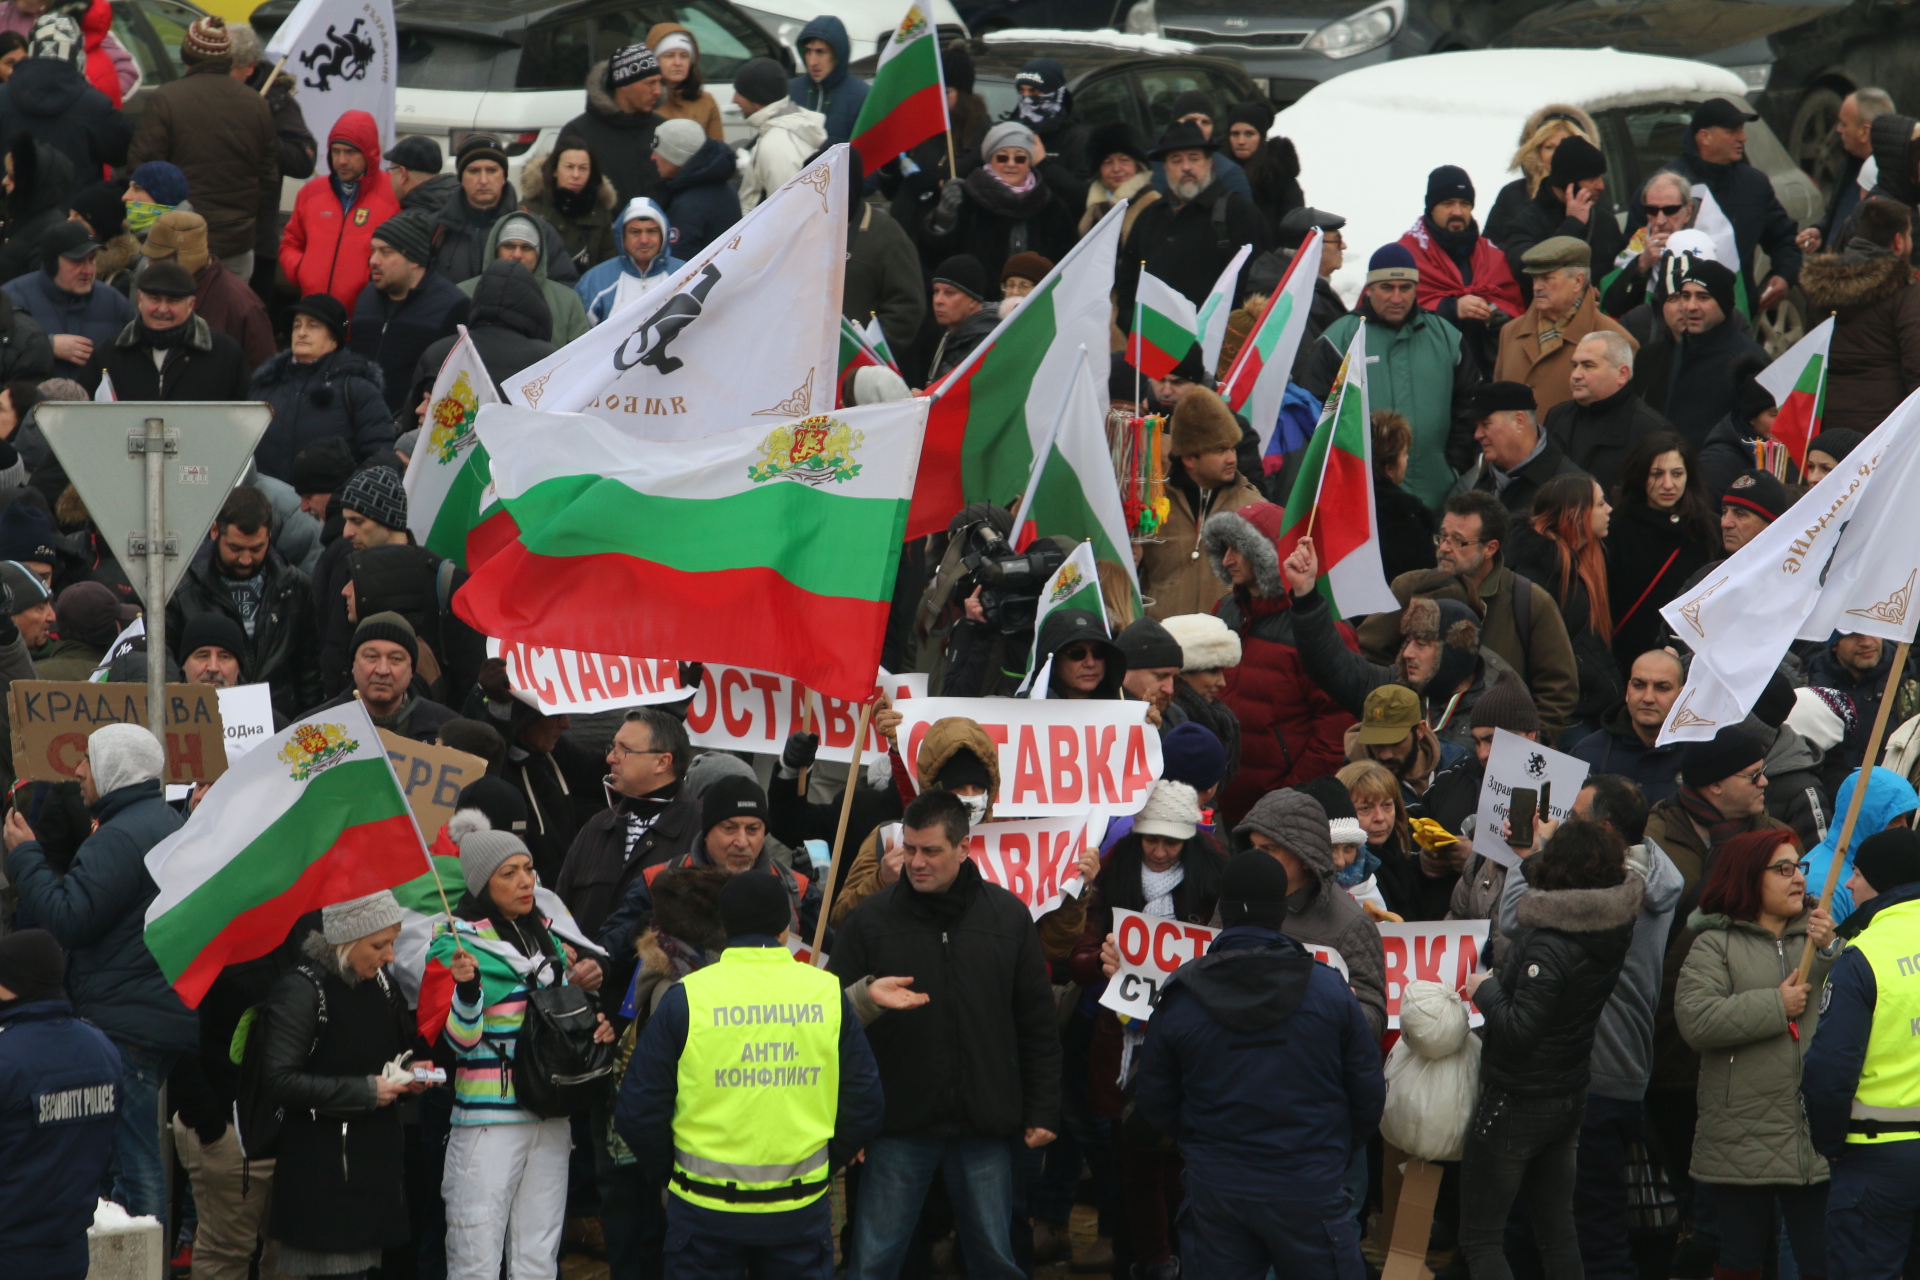 Лидерът на движението Костадин Костадинов заяви, че недоволните са се събрали да изразят недоволството срещу управляващите, които "отровили въздуха, откраднаха водите, продадоха златото и изгониха бъдещето на България".